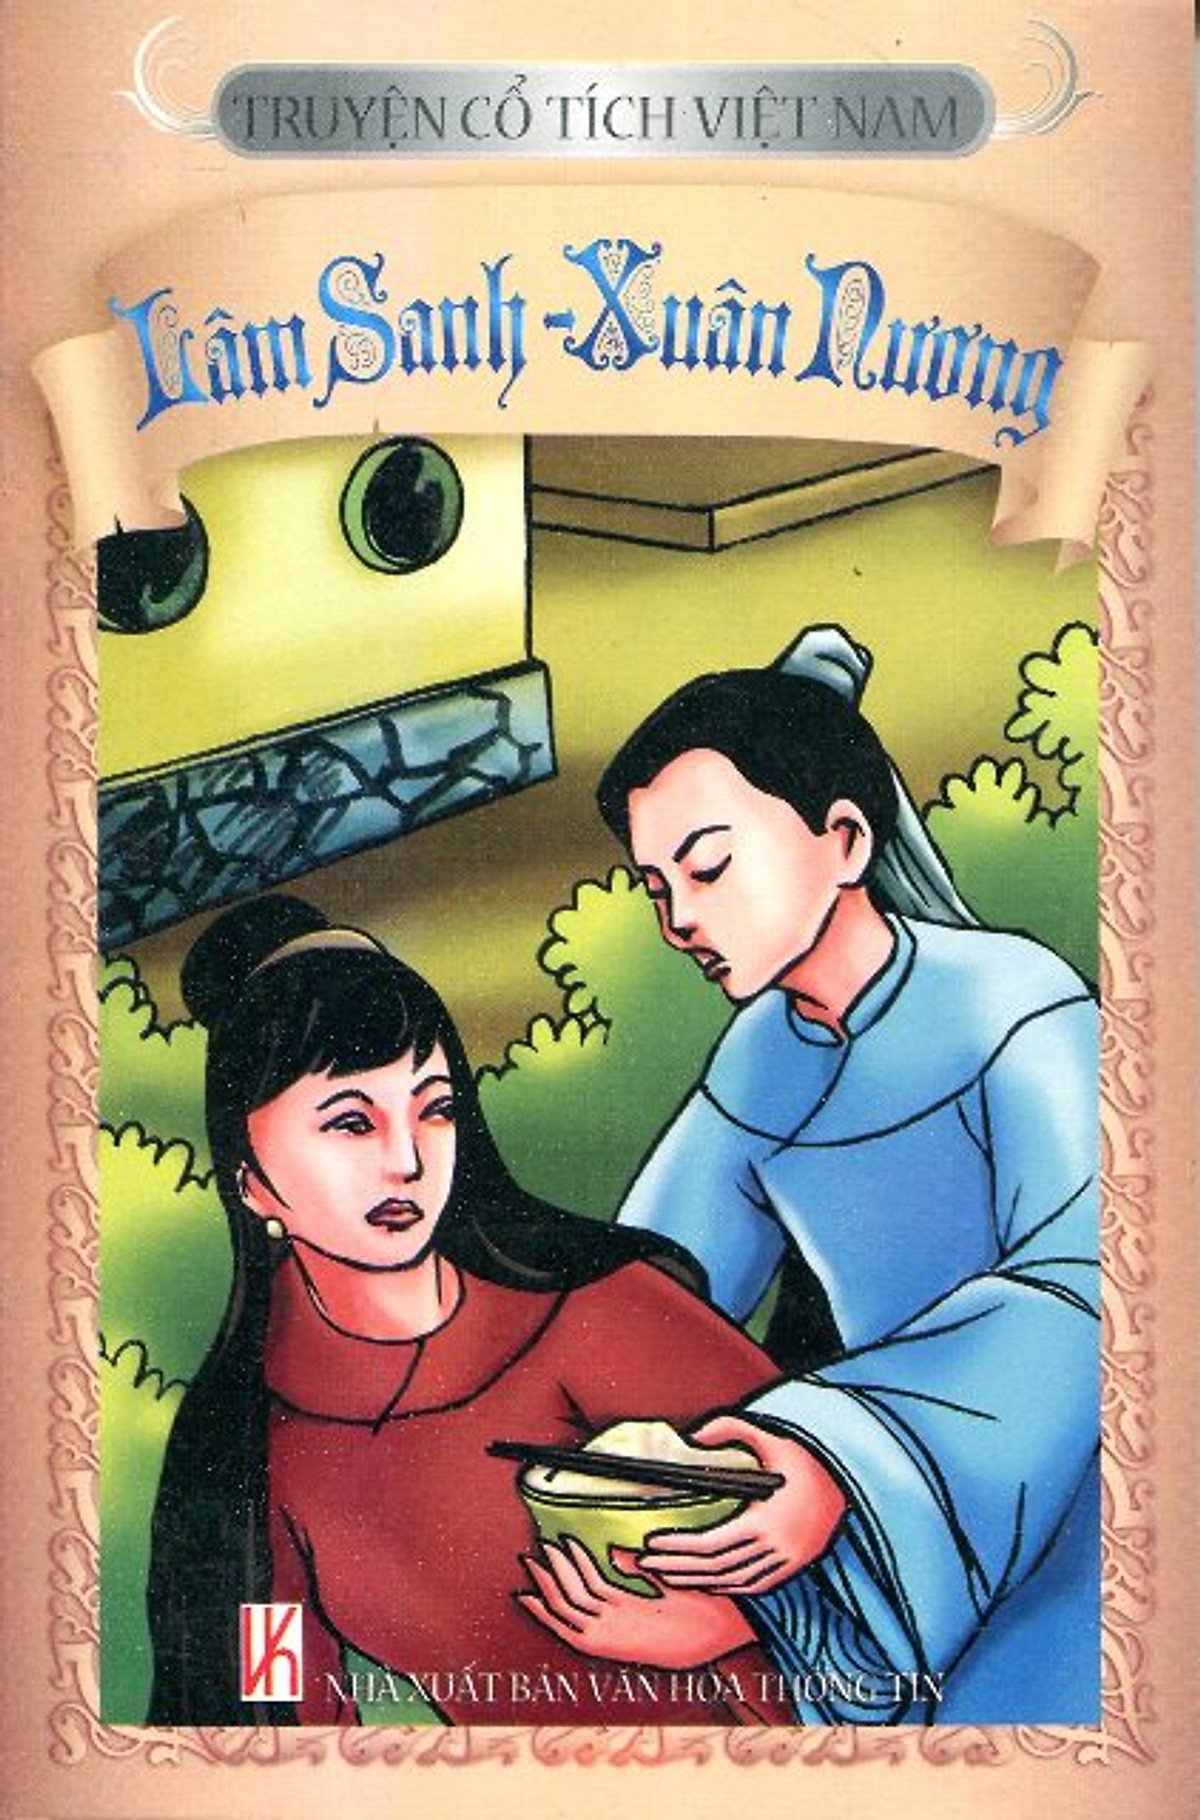 Truyện Cổ Tích Việt Nam - Lâm Sanh - Xuân Nương